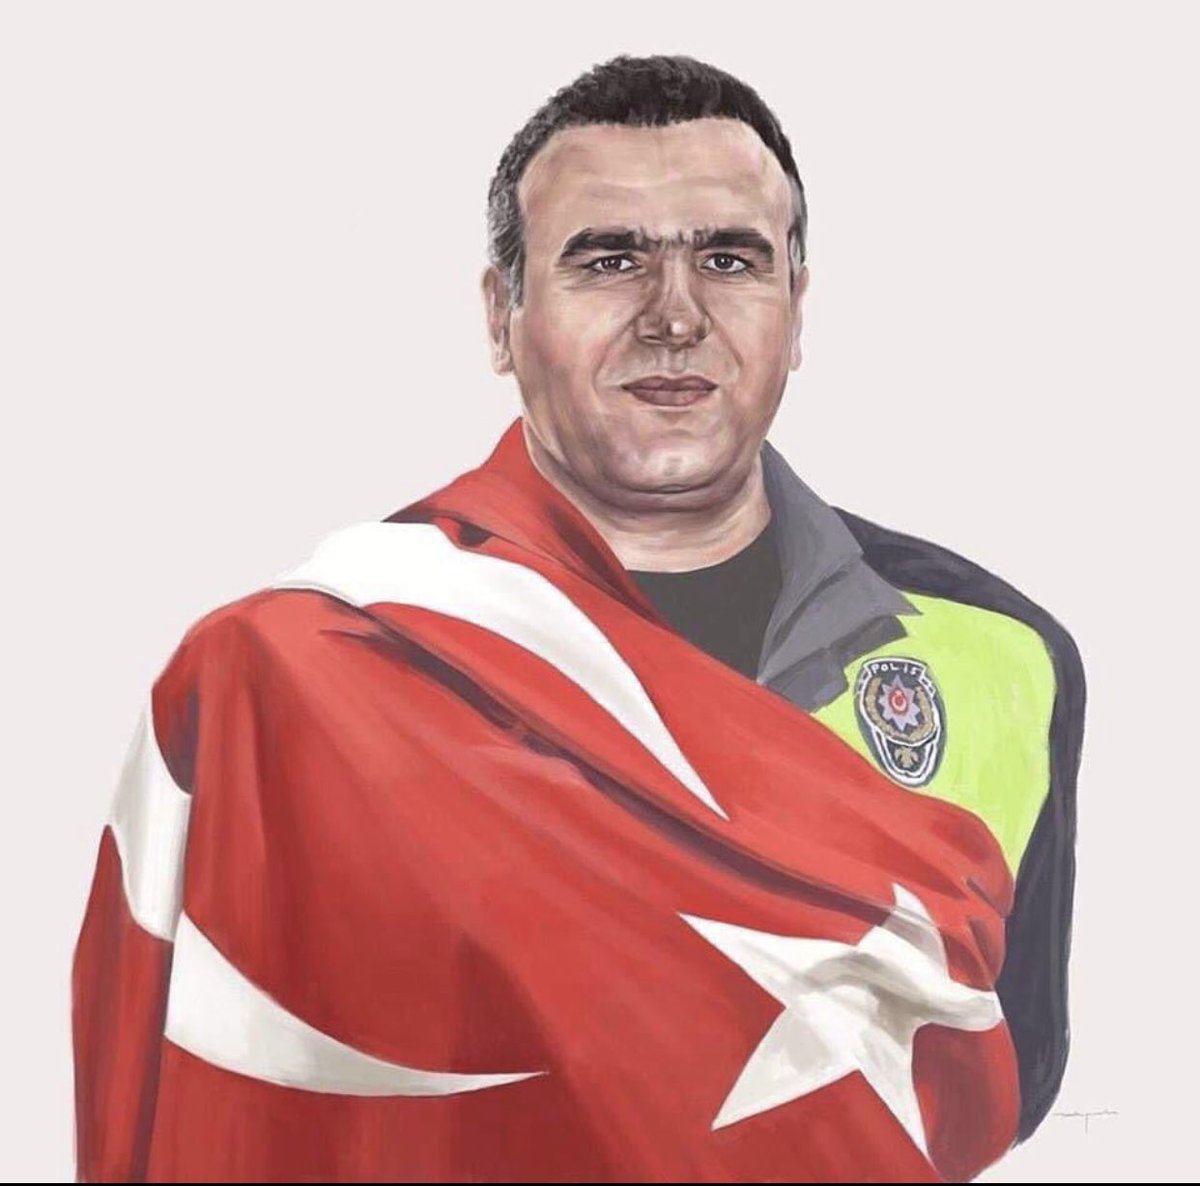 İzmir'de teröristlerin hain planını bozarak şehadete koşan kahraman polis memurumuz  #FethiSekin'i vefatının yıldönümünde rahmetle ve minnetle yad ediyor, tüm şehitlerimize Allah’tan rahmet diliyorum.